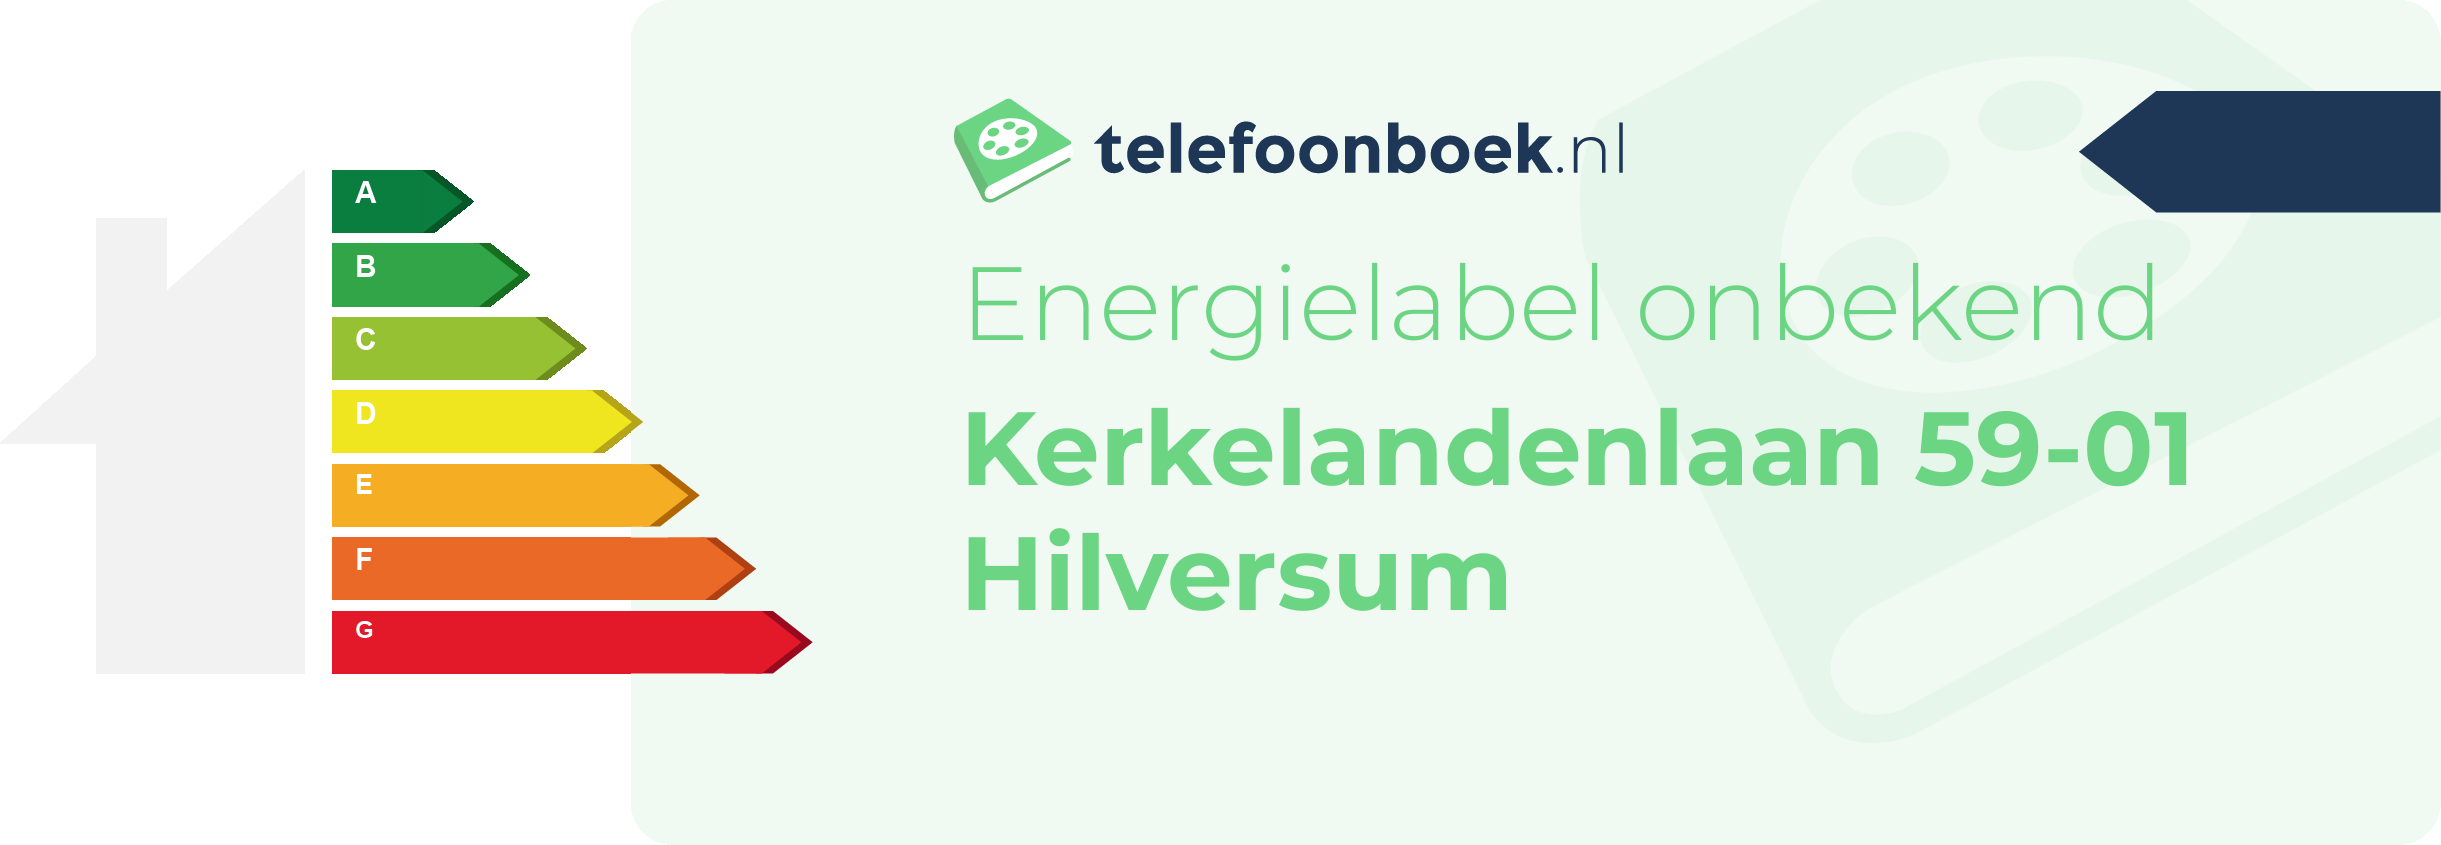 Energielabel Kerkelandenlaan 59-01 Hilversum